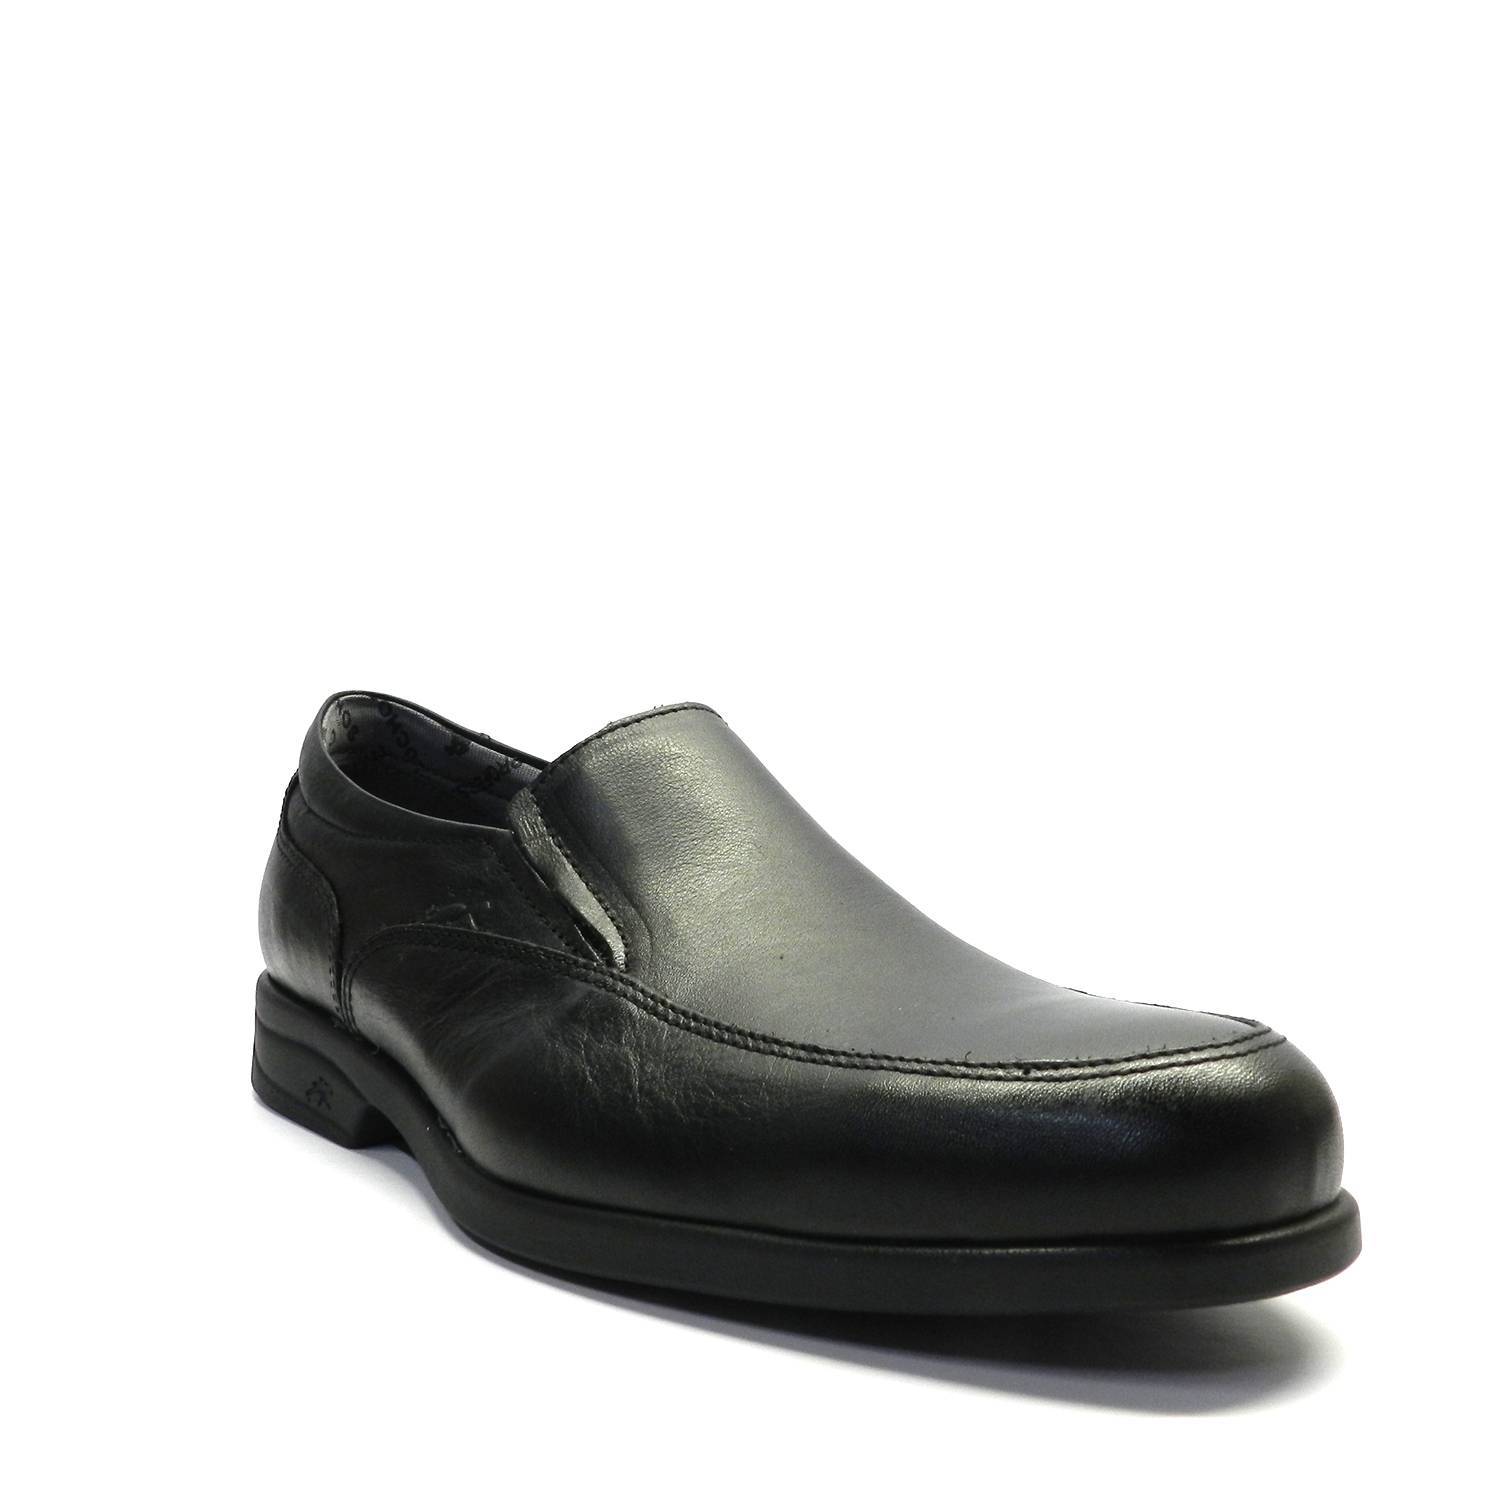 Mocasín para hombre de la marca Fluchos, modelo 8902 Maitre en color negro. Abotinado con gomas laterales, muy duraderos y cómodos. Zapato ideal para quien esta muchas horas de pie y busca comodidad.